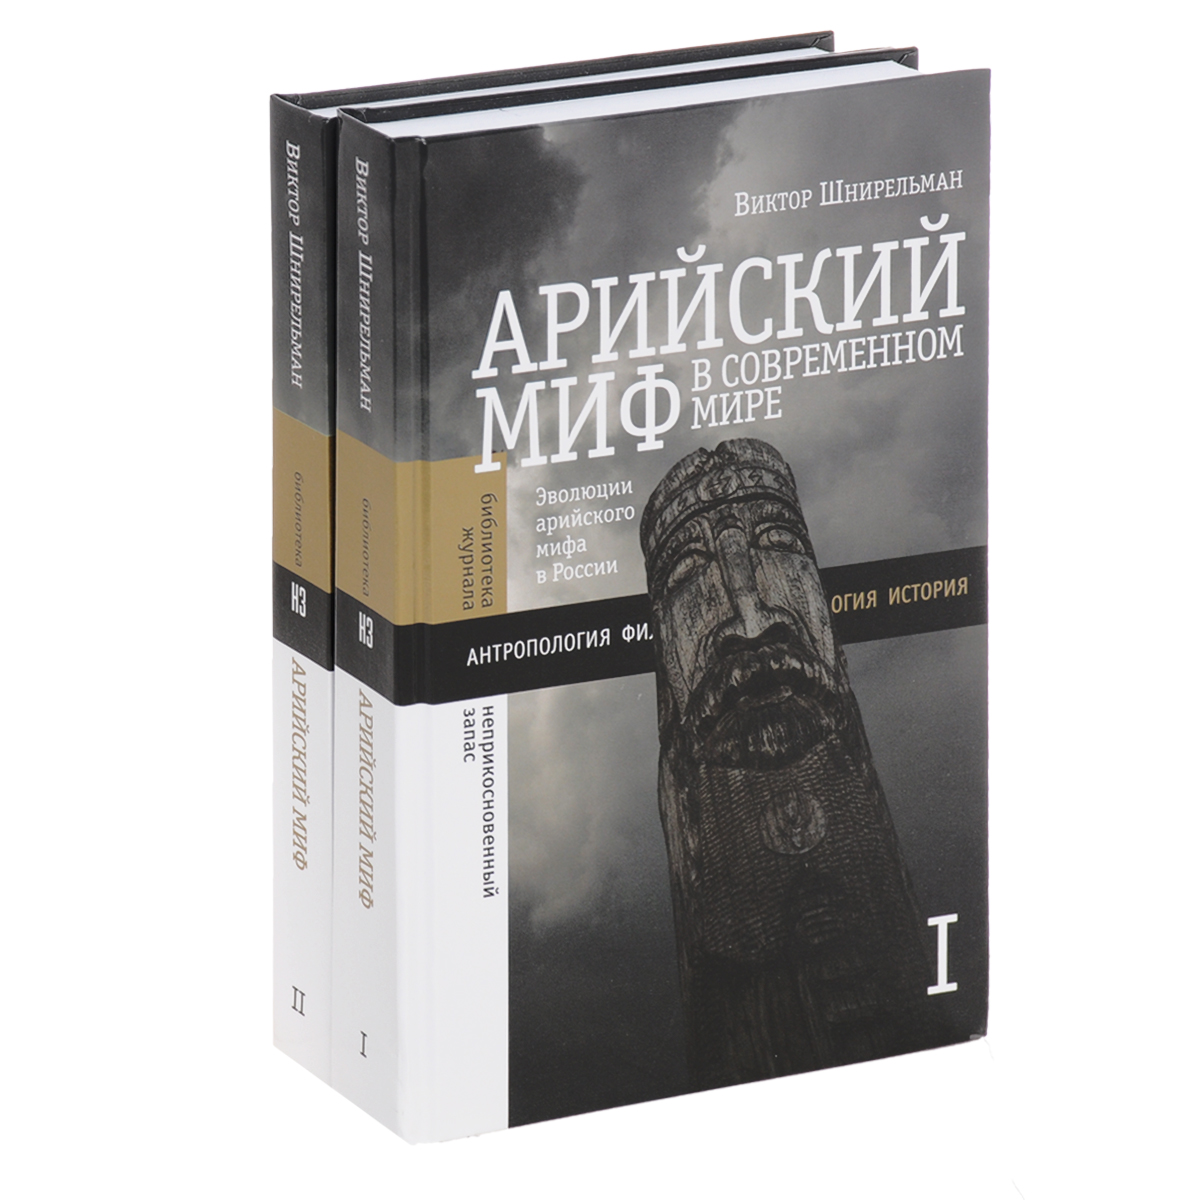 Арийский миф в современном мире. В 2 томах (комплект). Виктор Шнирельман